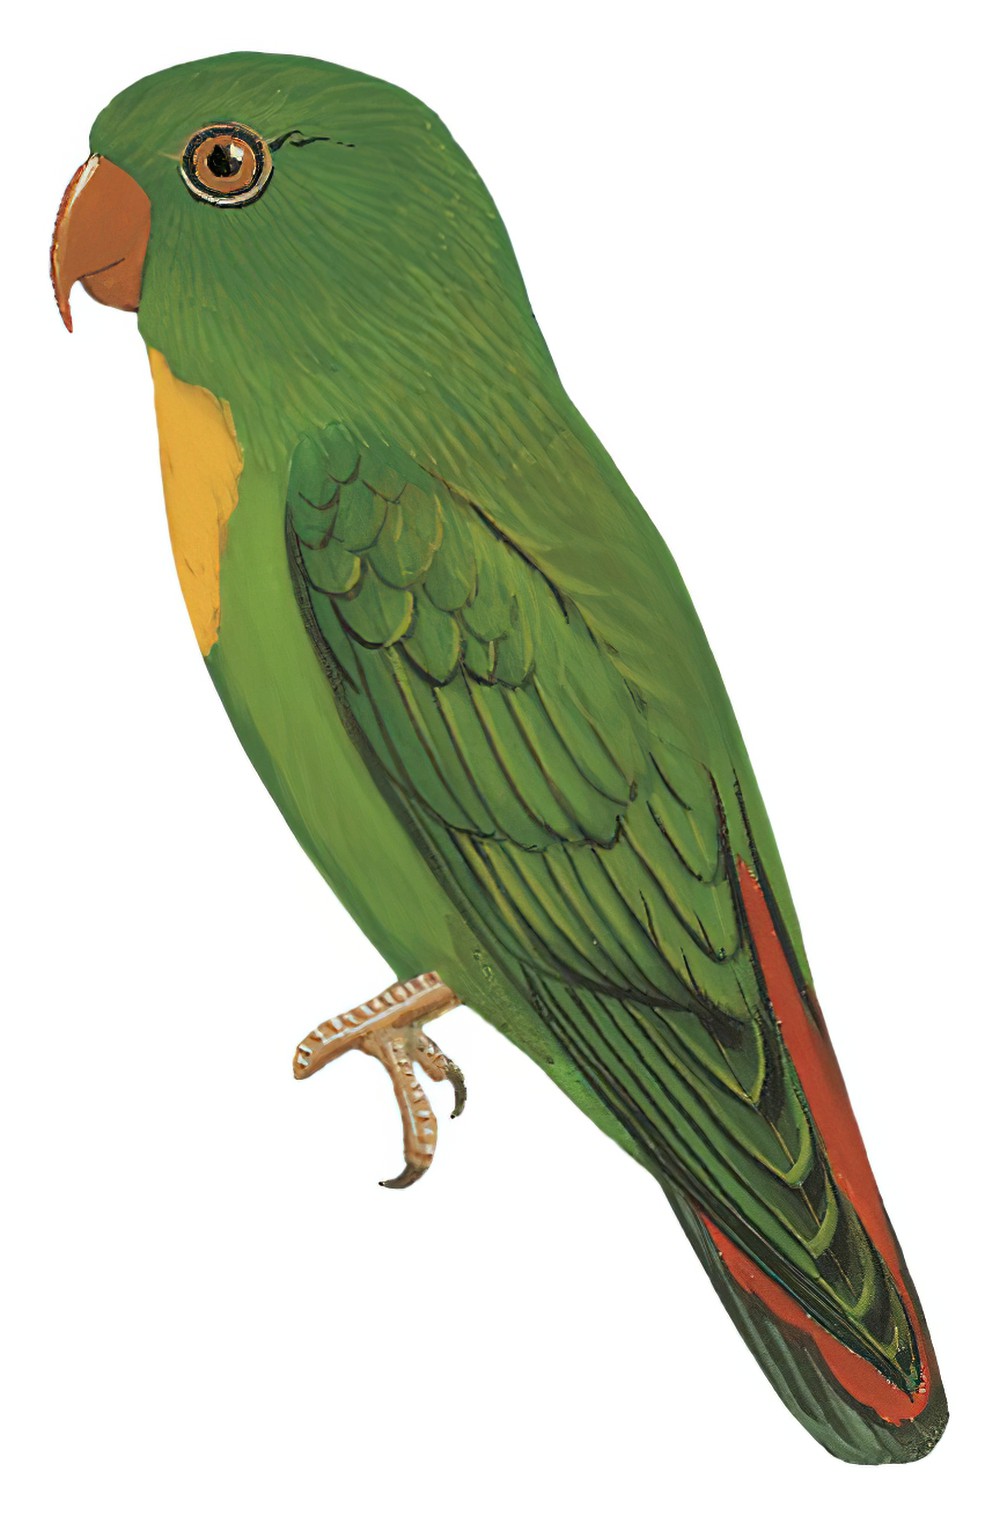 黄喉短尾鹦鹉 / Yellow-throated Hanging Parrot / Loriculus pusillus